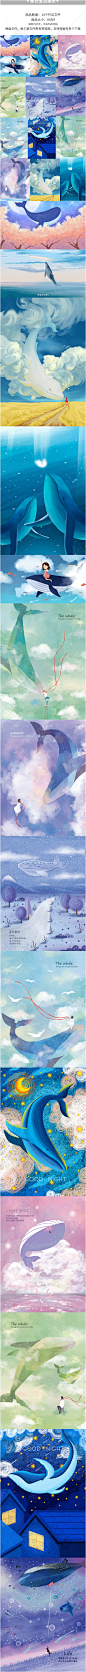 小清新唯美创意鲸鱼鲲手绘星空空间APP插图插画海报UI设计素材PSD-淘宝网_20190203130951